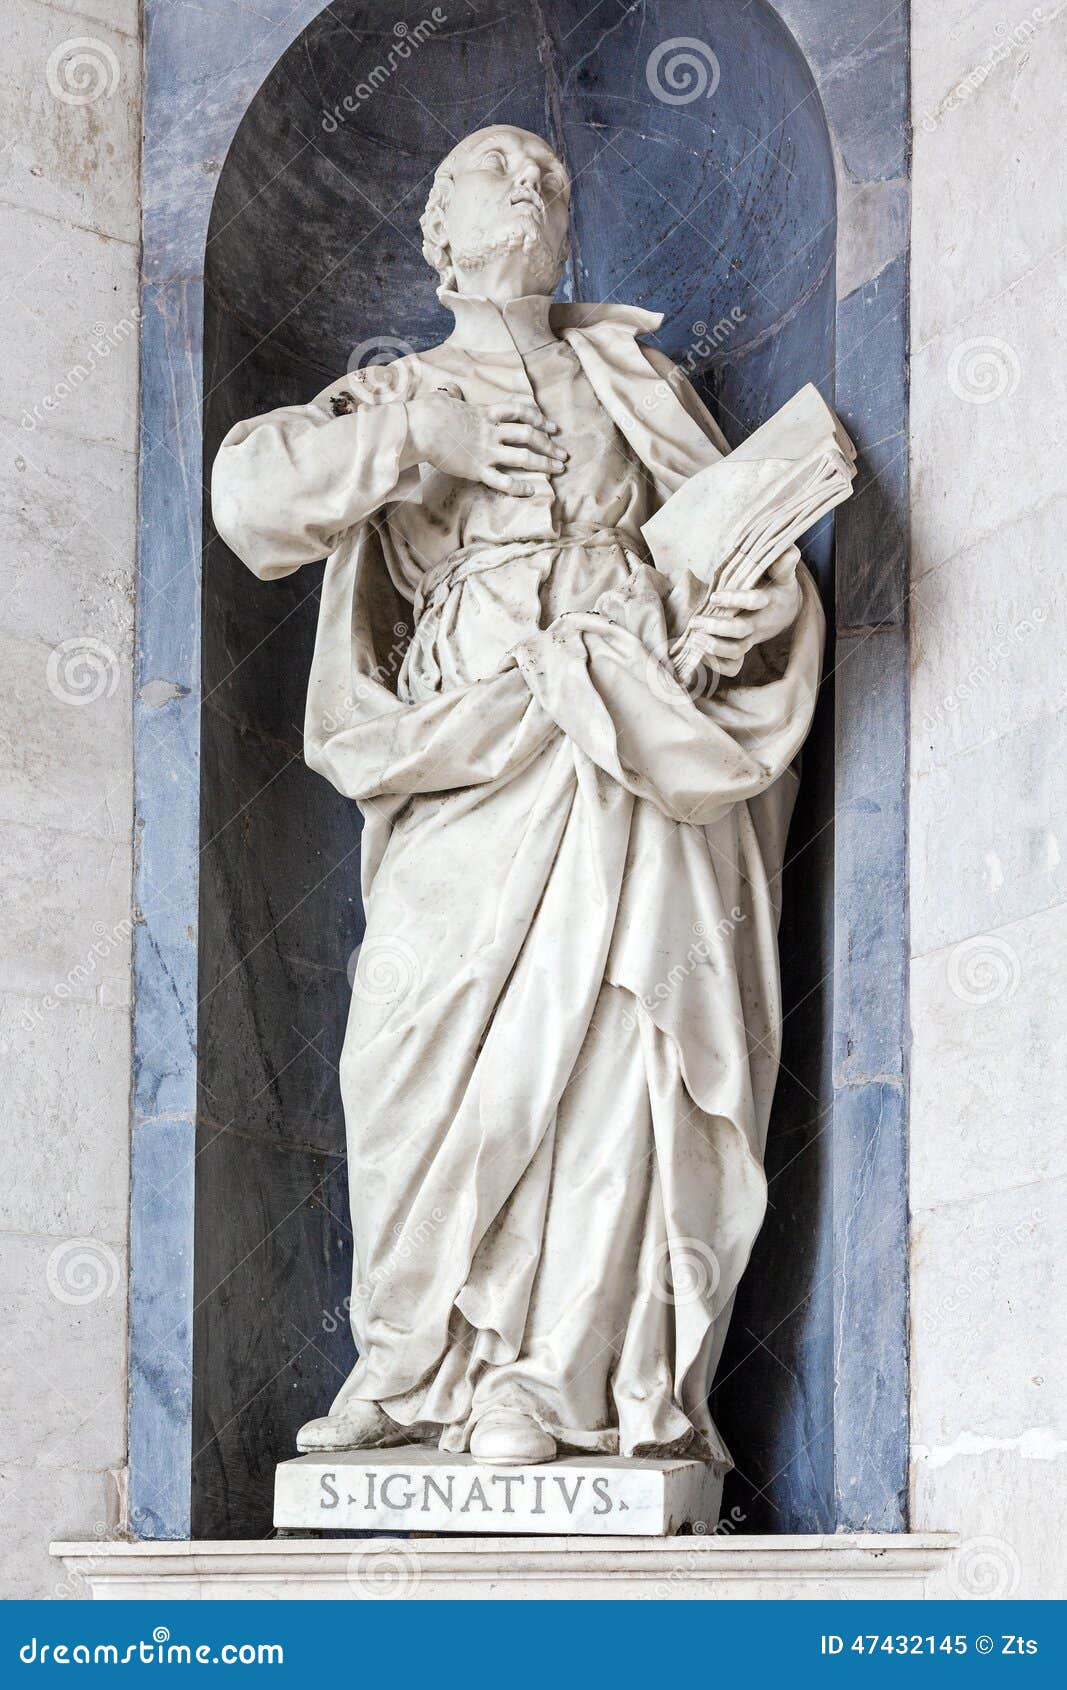 saint ignatius of loyola italian baroque sculpture